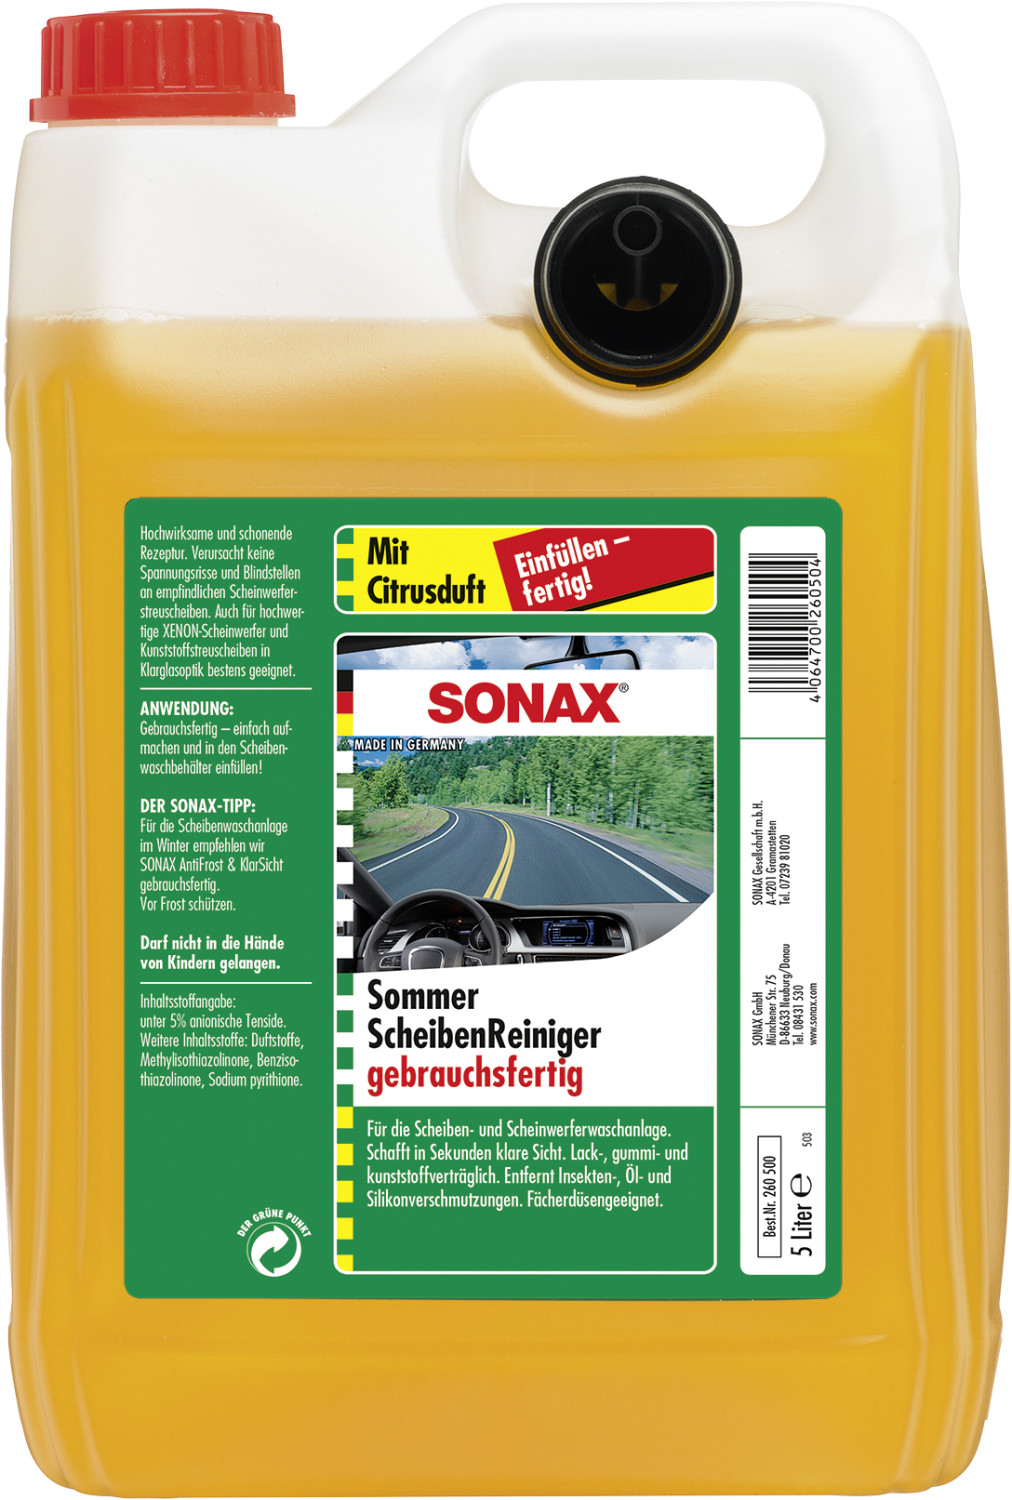 Sonax Antifrost Fertiggemisch 5l - günstig online einkaufen